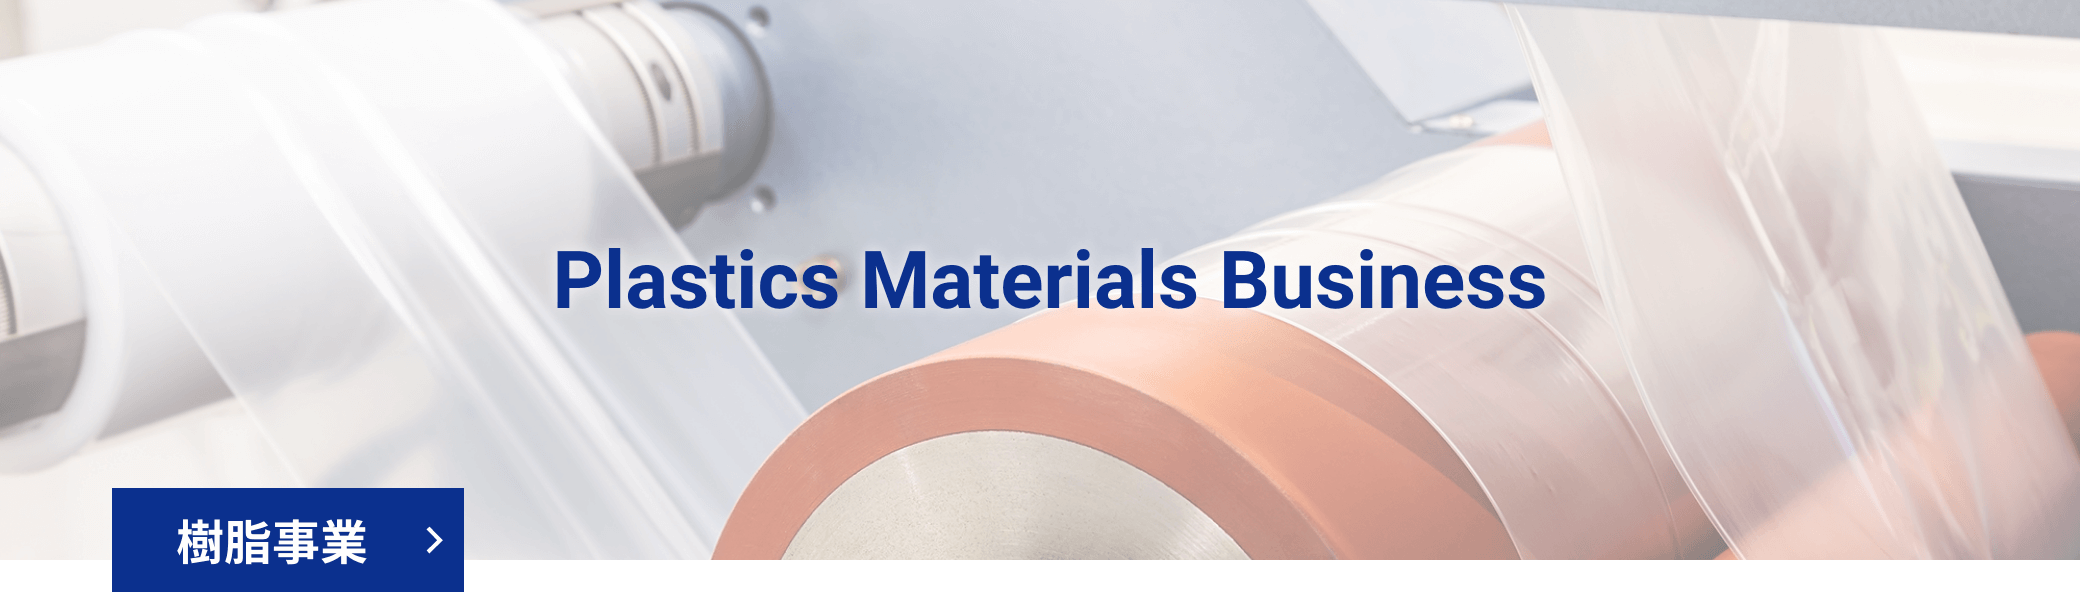 Plastics Materials Business 樹脂事業